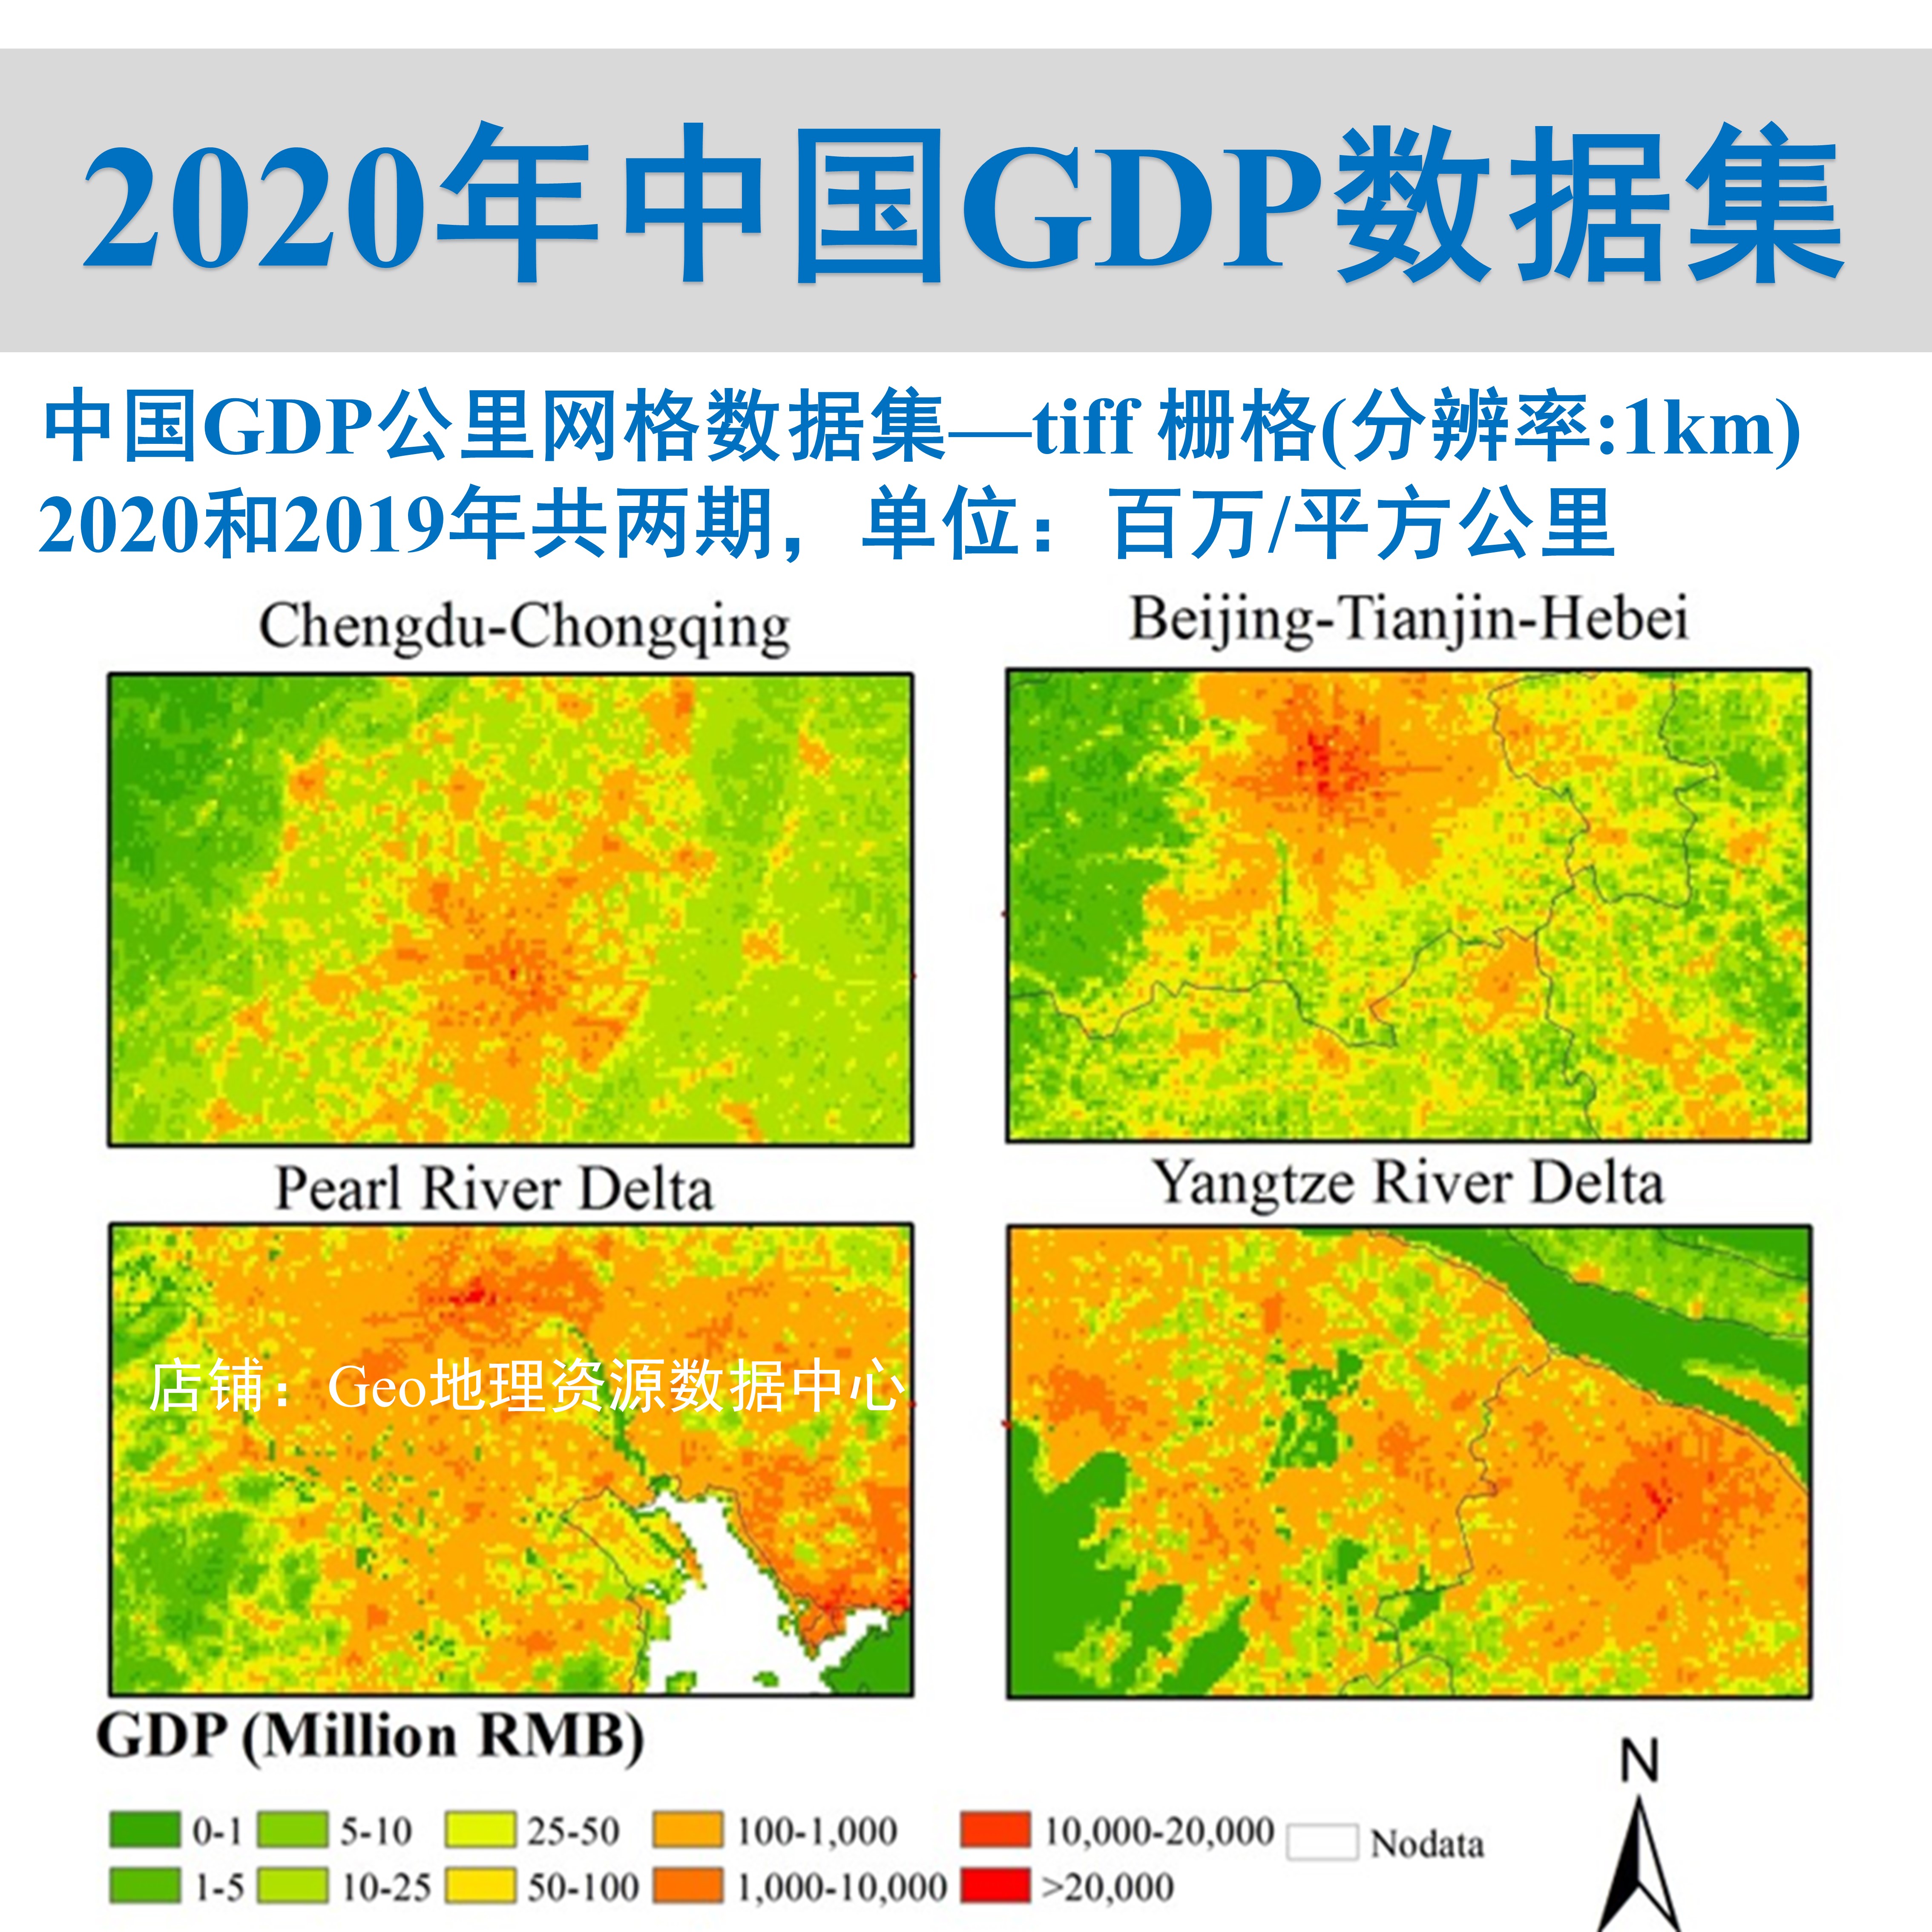 2020年和2019年中国GDP公里网格数据集tiff栅格gis出图生产总值